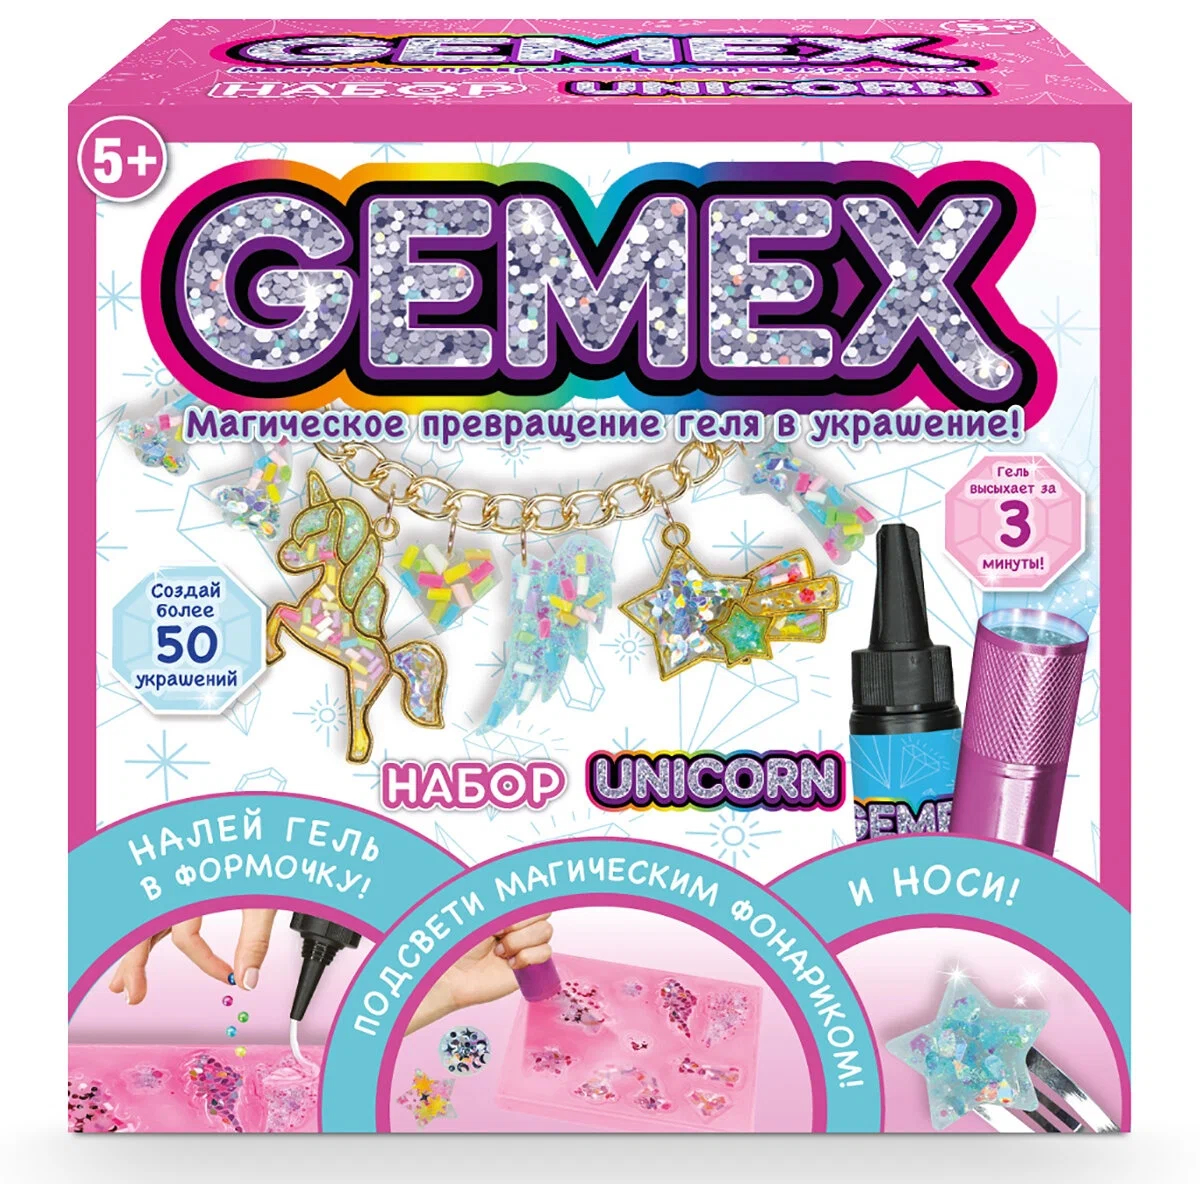 Набор для создания украшений Gemex Unicorn набор для создания одежды для кукол